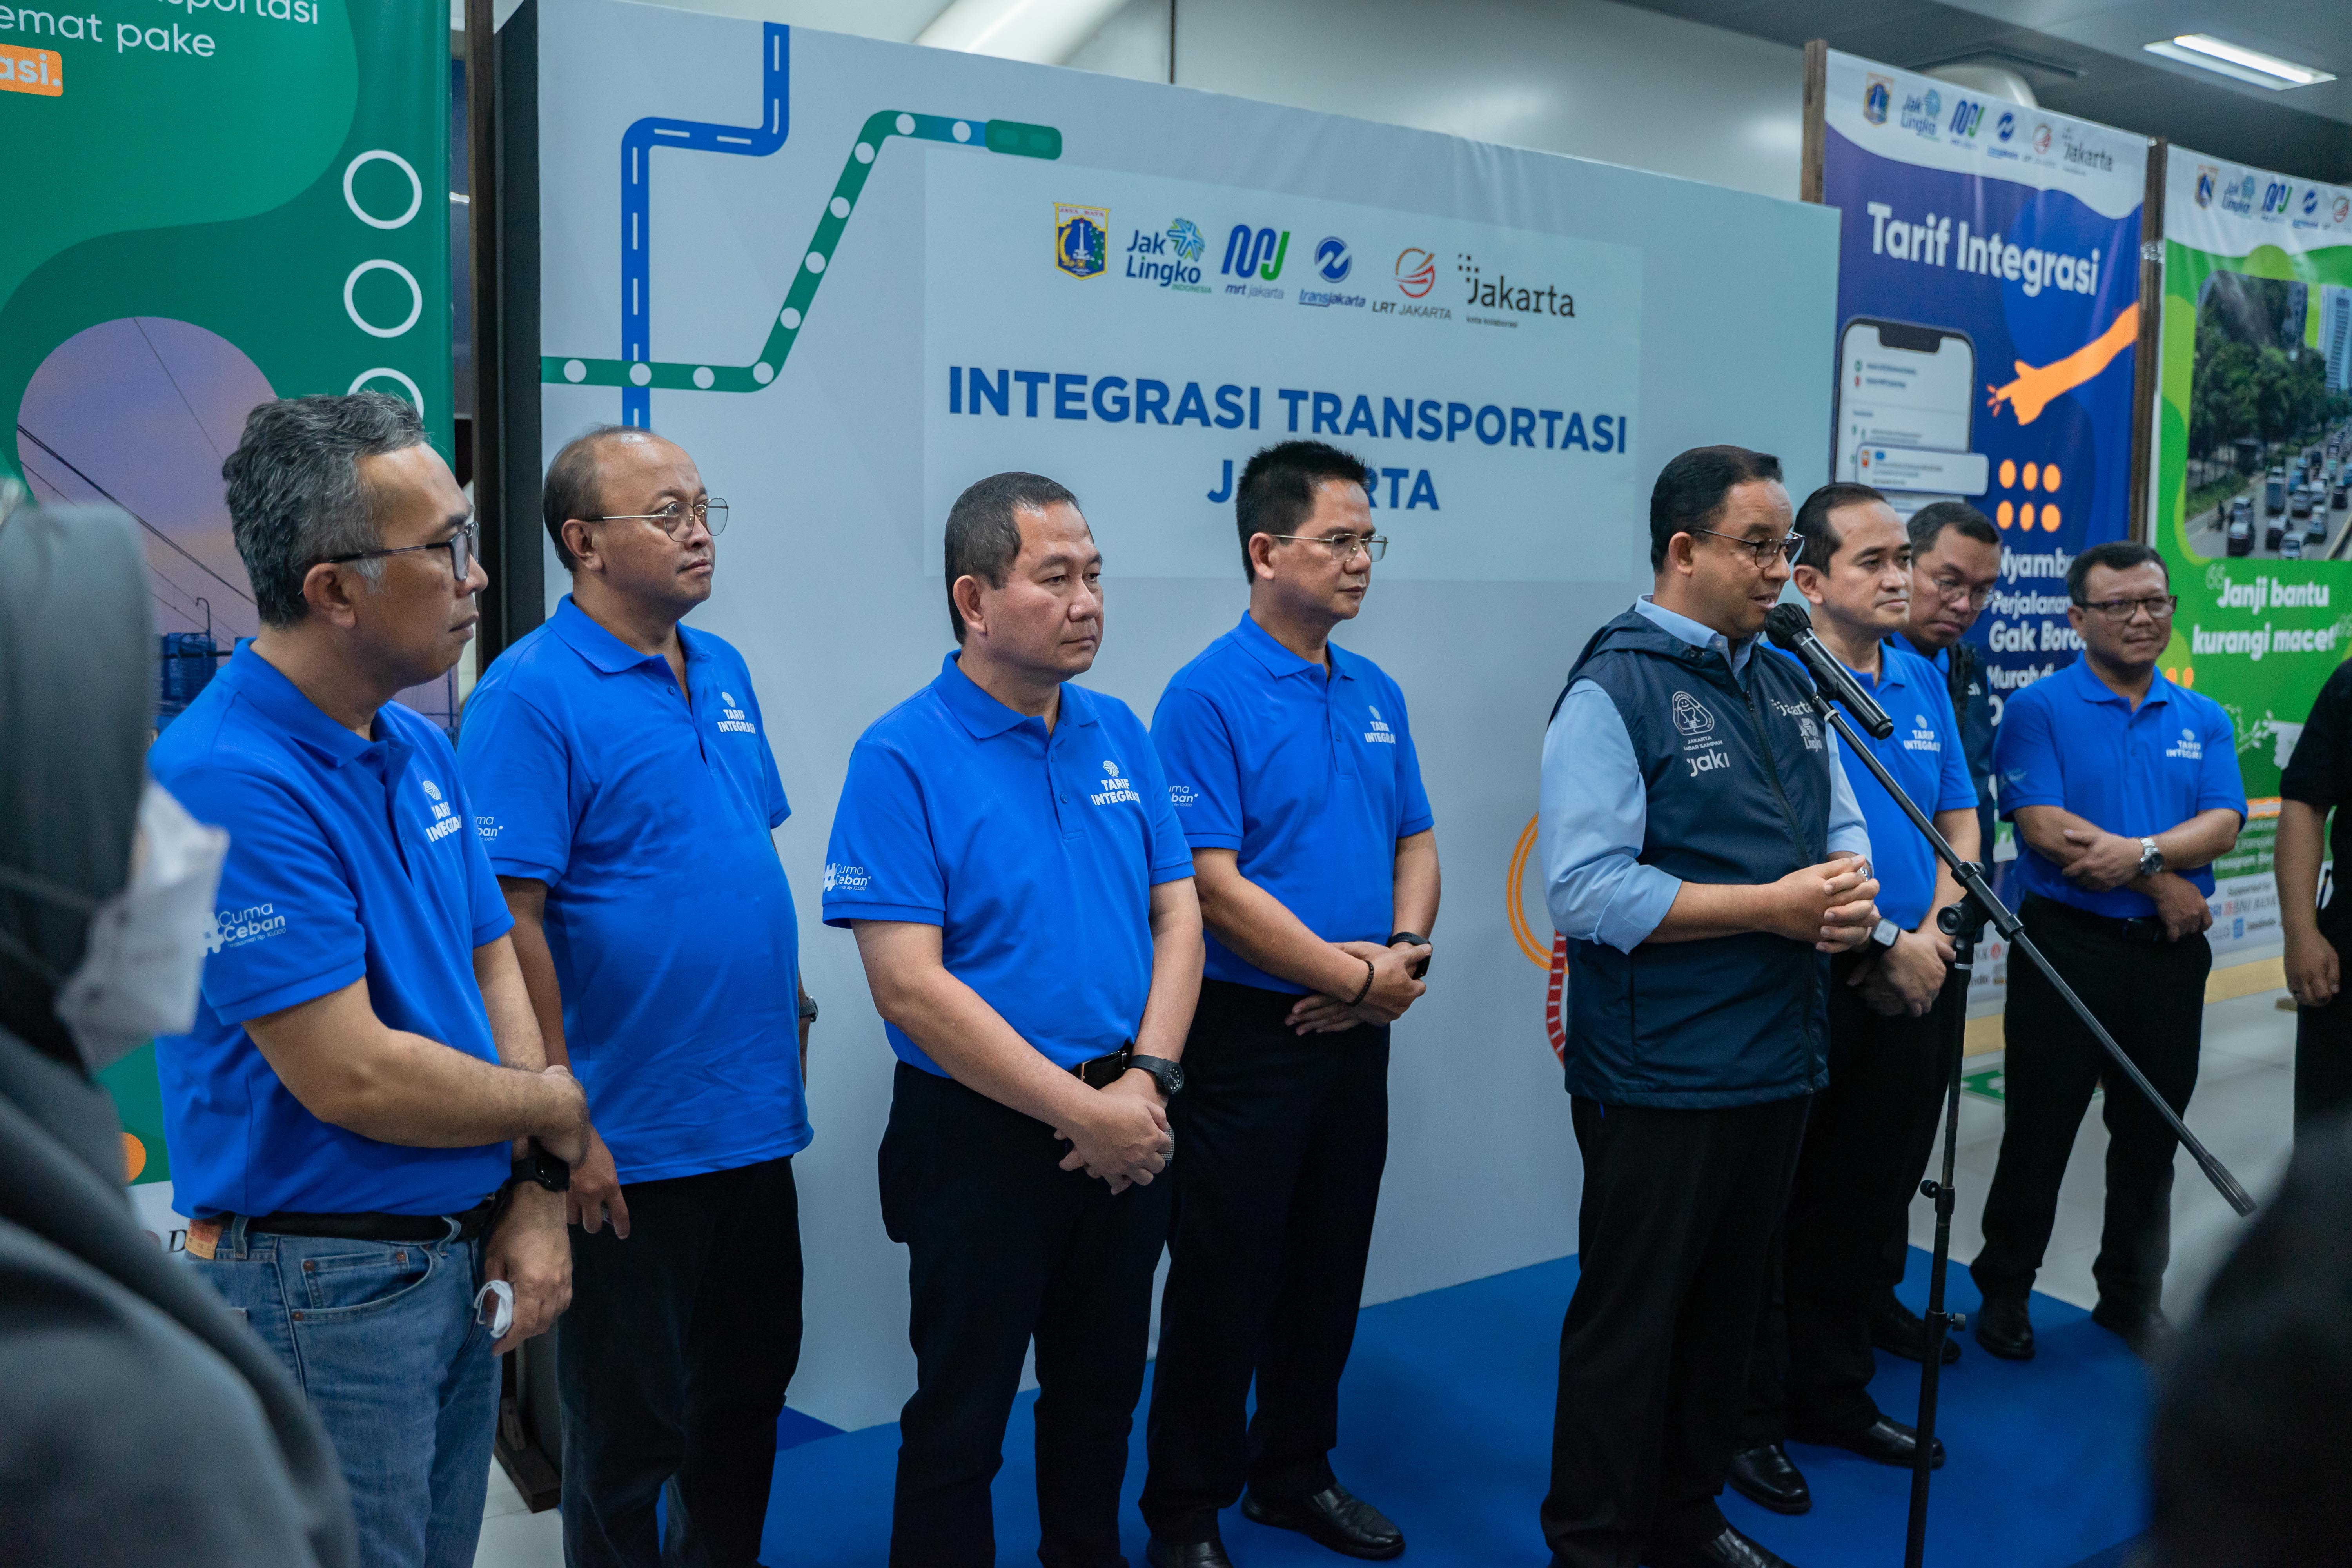 Integrasi Transportasi Jakarta @MRT Asean 2022